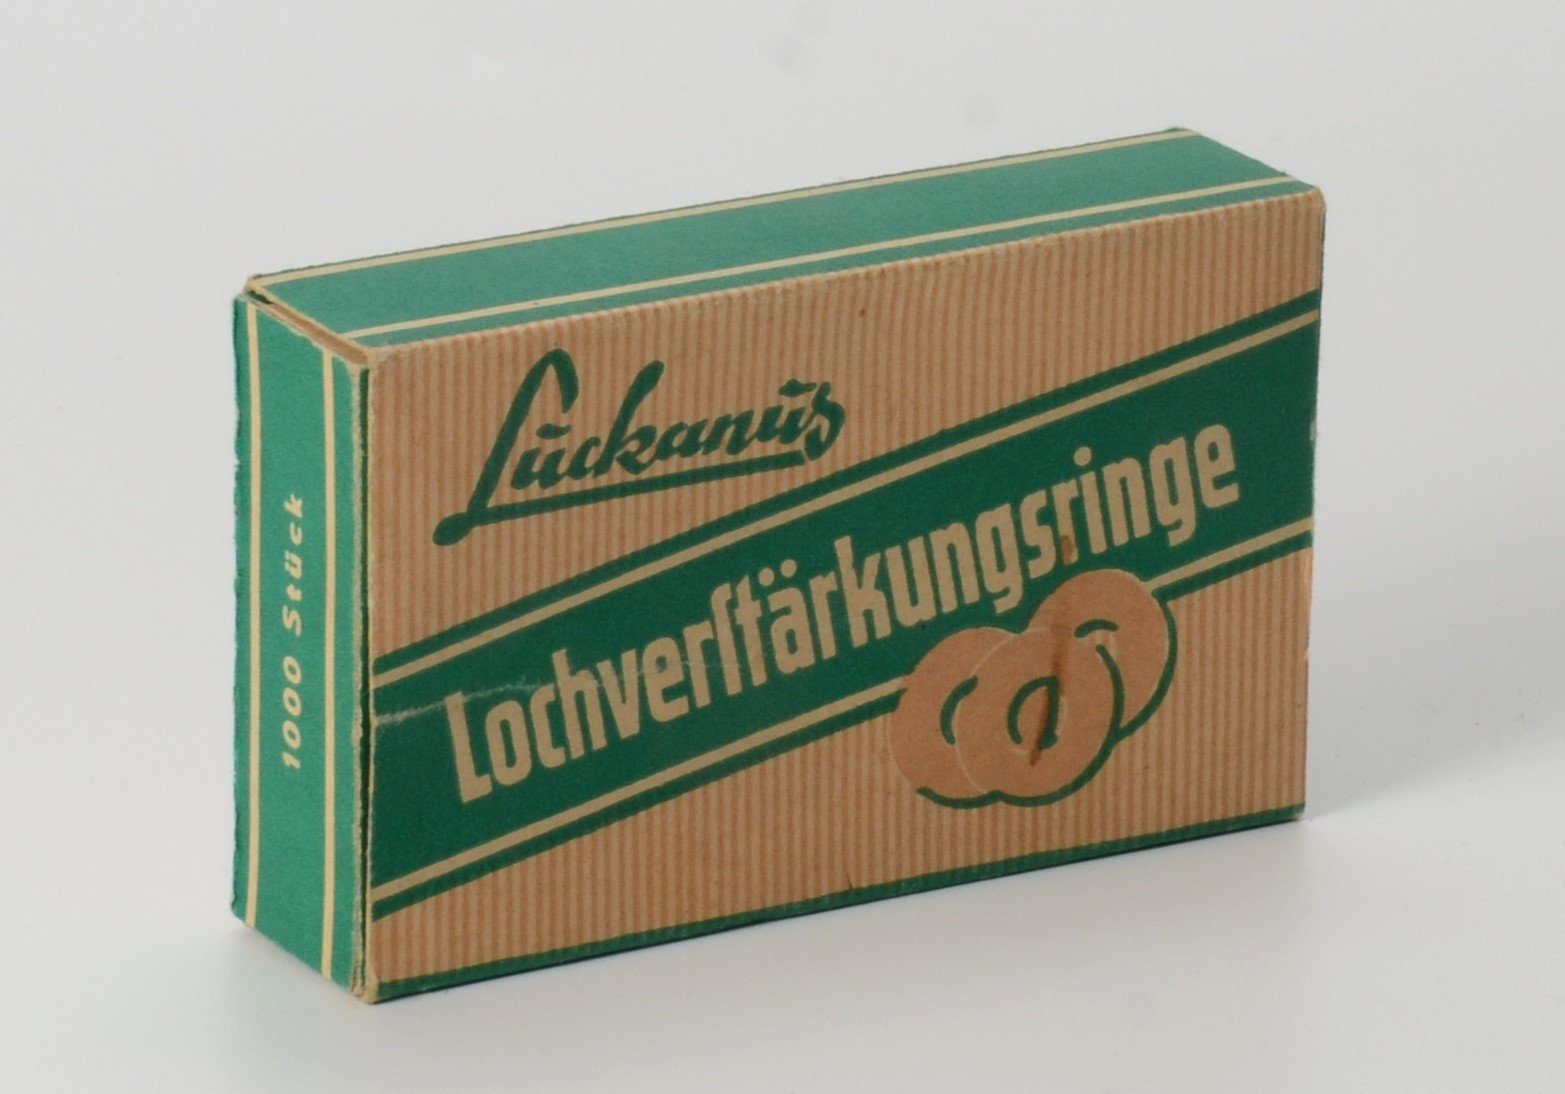 Verpackung für Lochverstärkungsringe (DDR Geschichtsmuseum im Dokumentationszentrum Perleberg CC BY-SA)